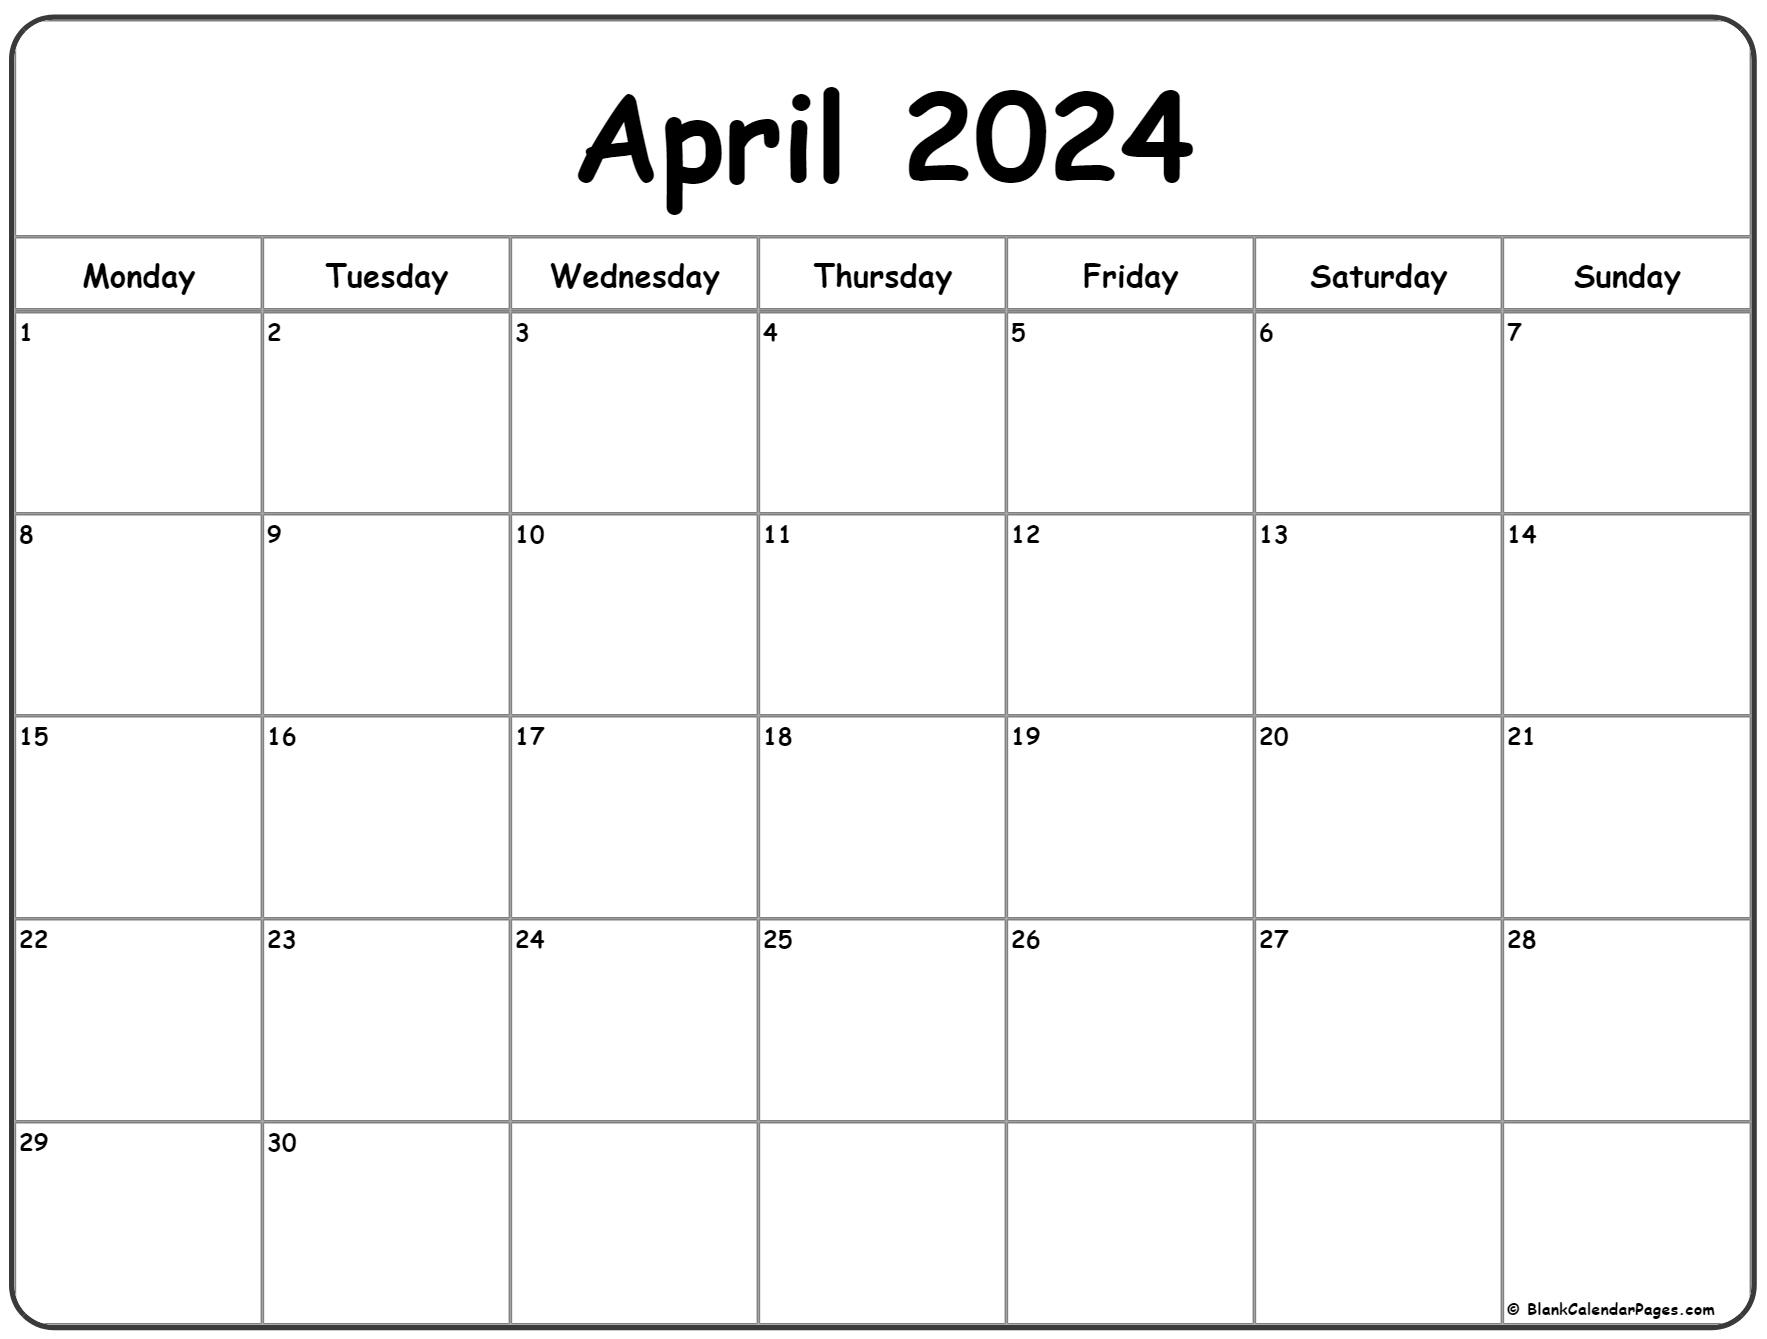 April 2024 Monday Calendar | Monday To Sunday for April 2024 Calendar Printable